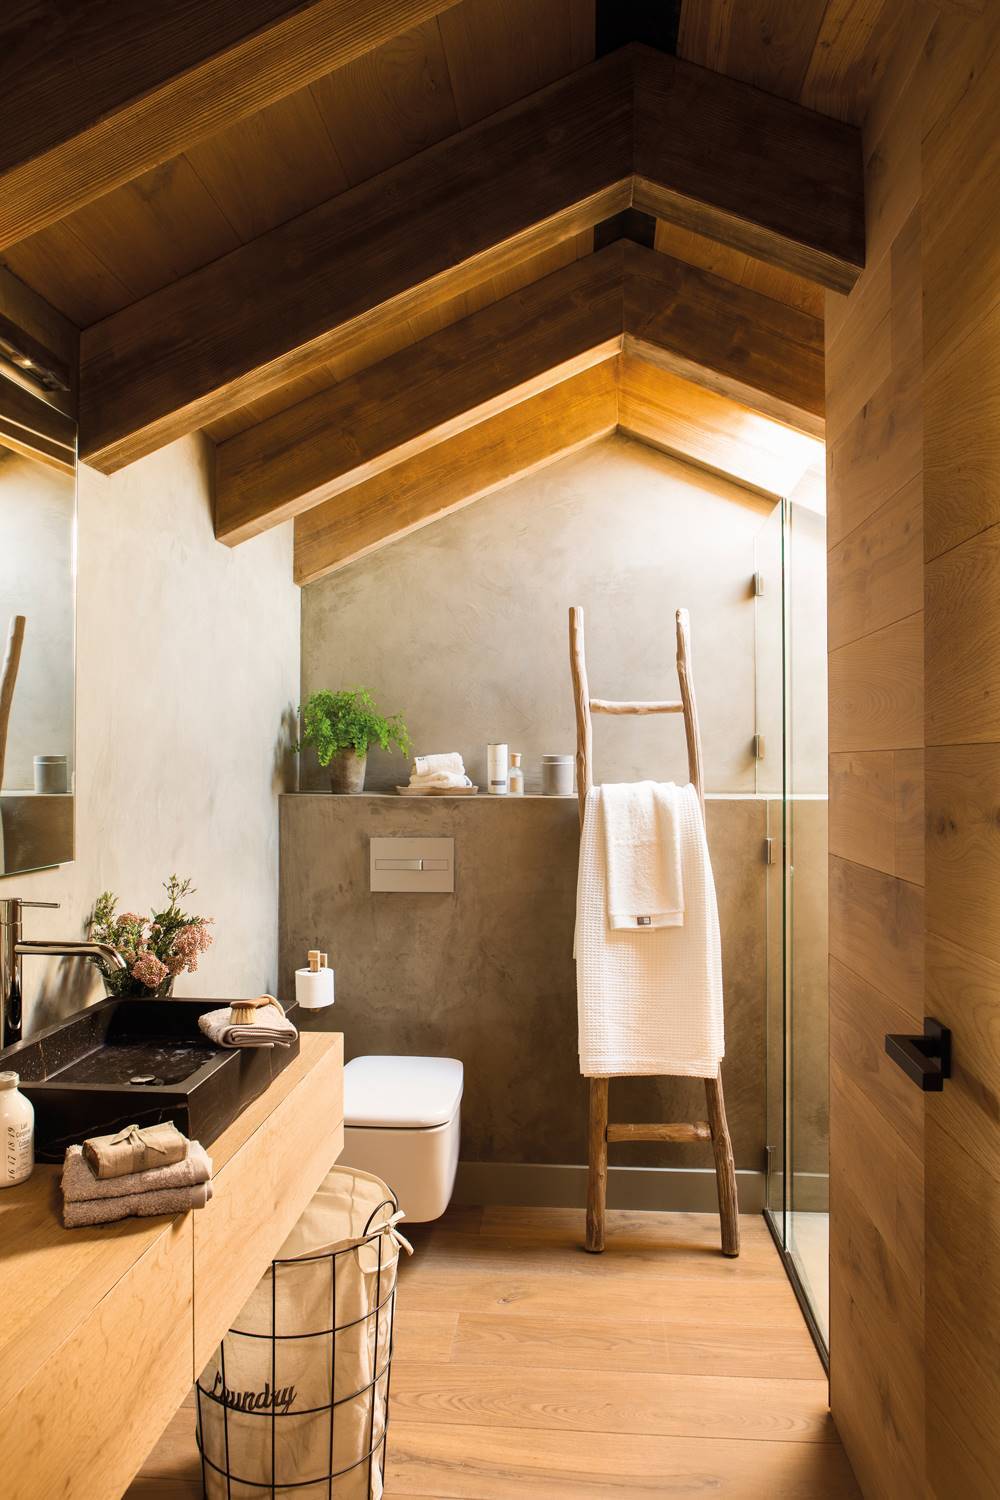 Baño rústico con escalera-toallero, vigas y paredes de madera. 